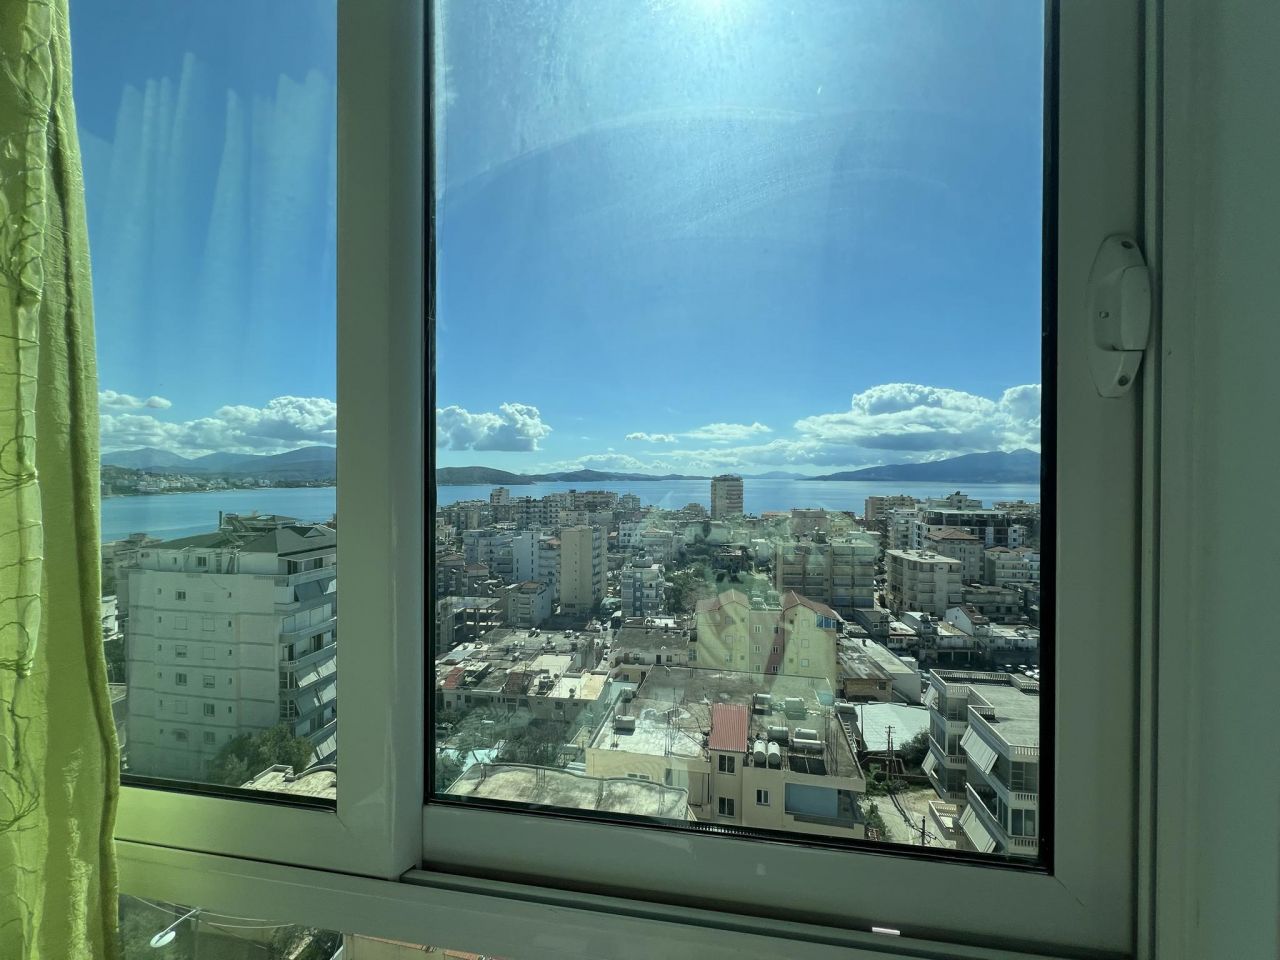 Mieszkanie Na Sprzedaż W Sarandzie W Albanii, W Pełni Umeblowane, Ze Wspaniałym Widokiem Na Morze